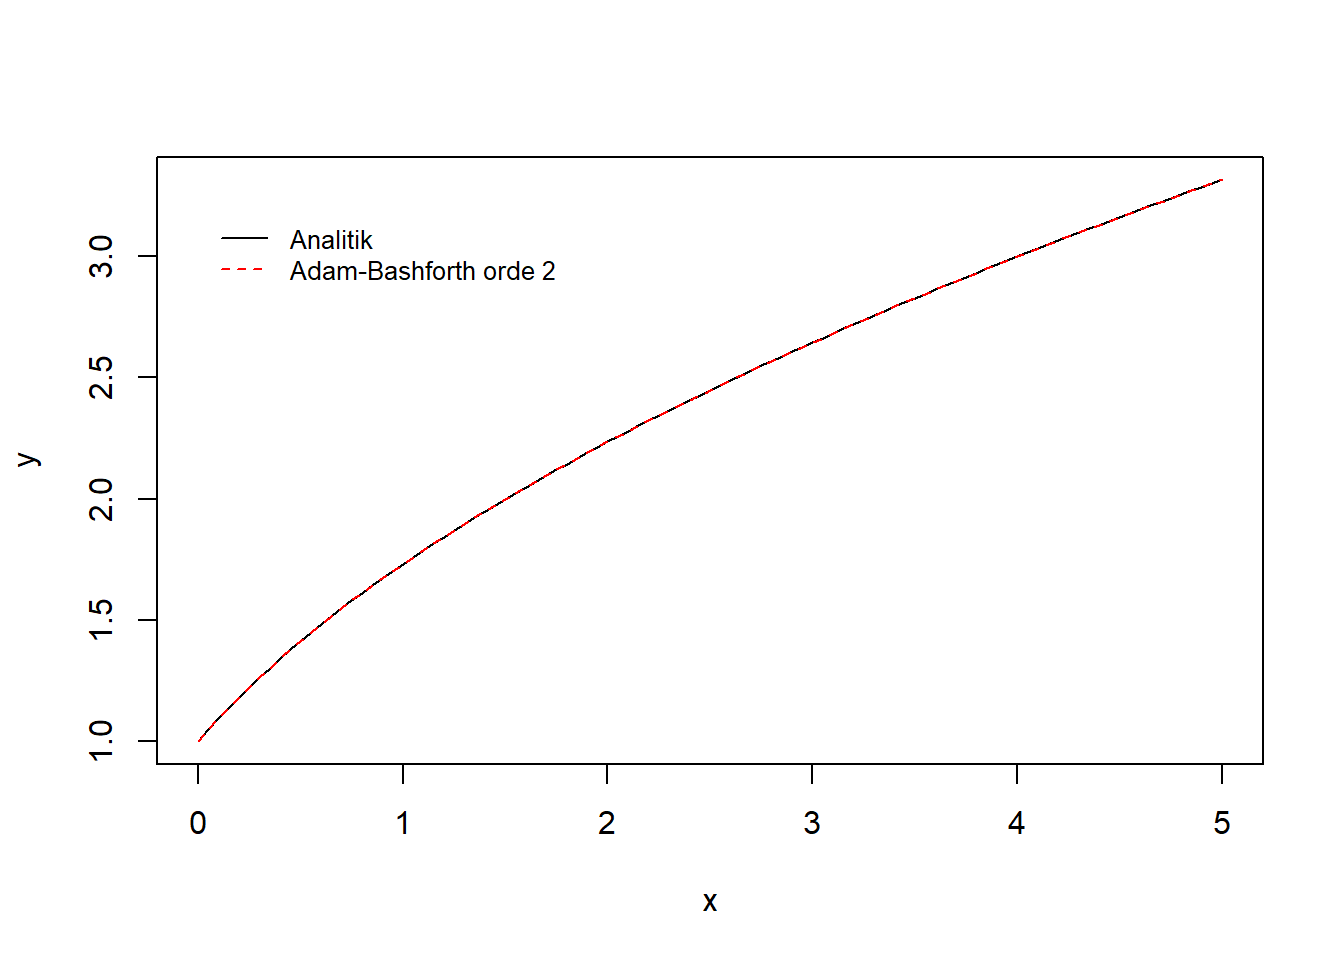 Visualisasi integrasi numerik dengan metode Adam-Bashfoth orde 2 dan metode analitik